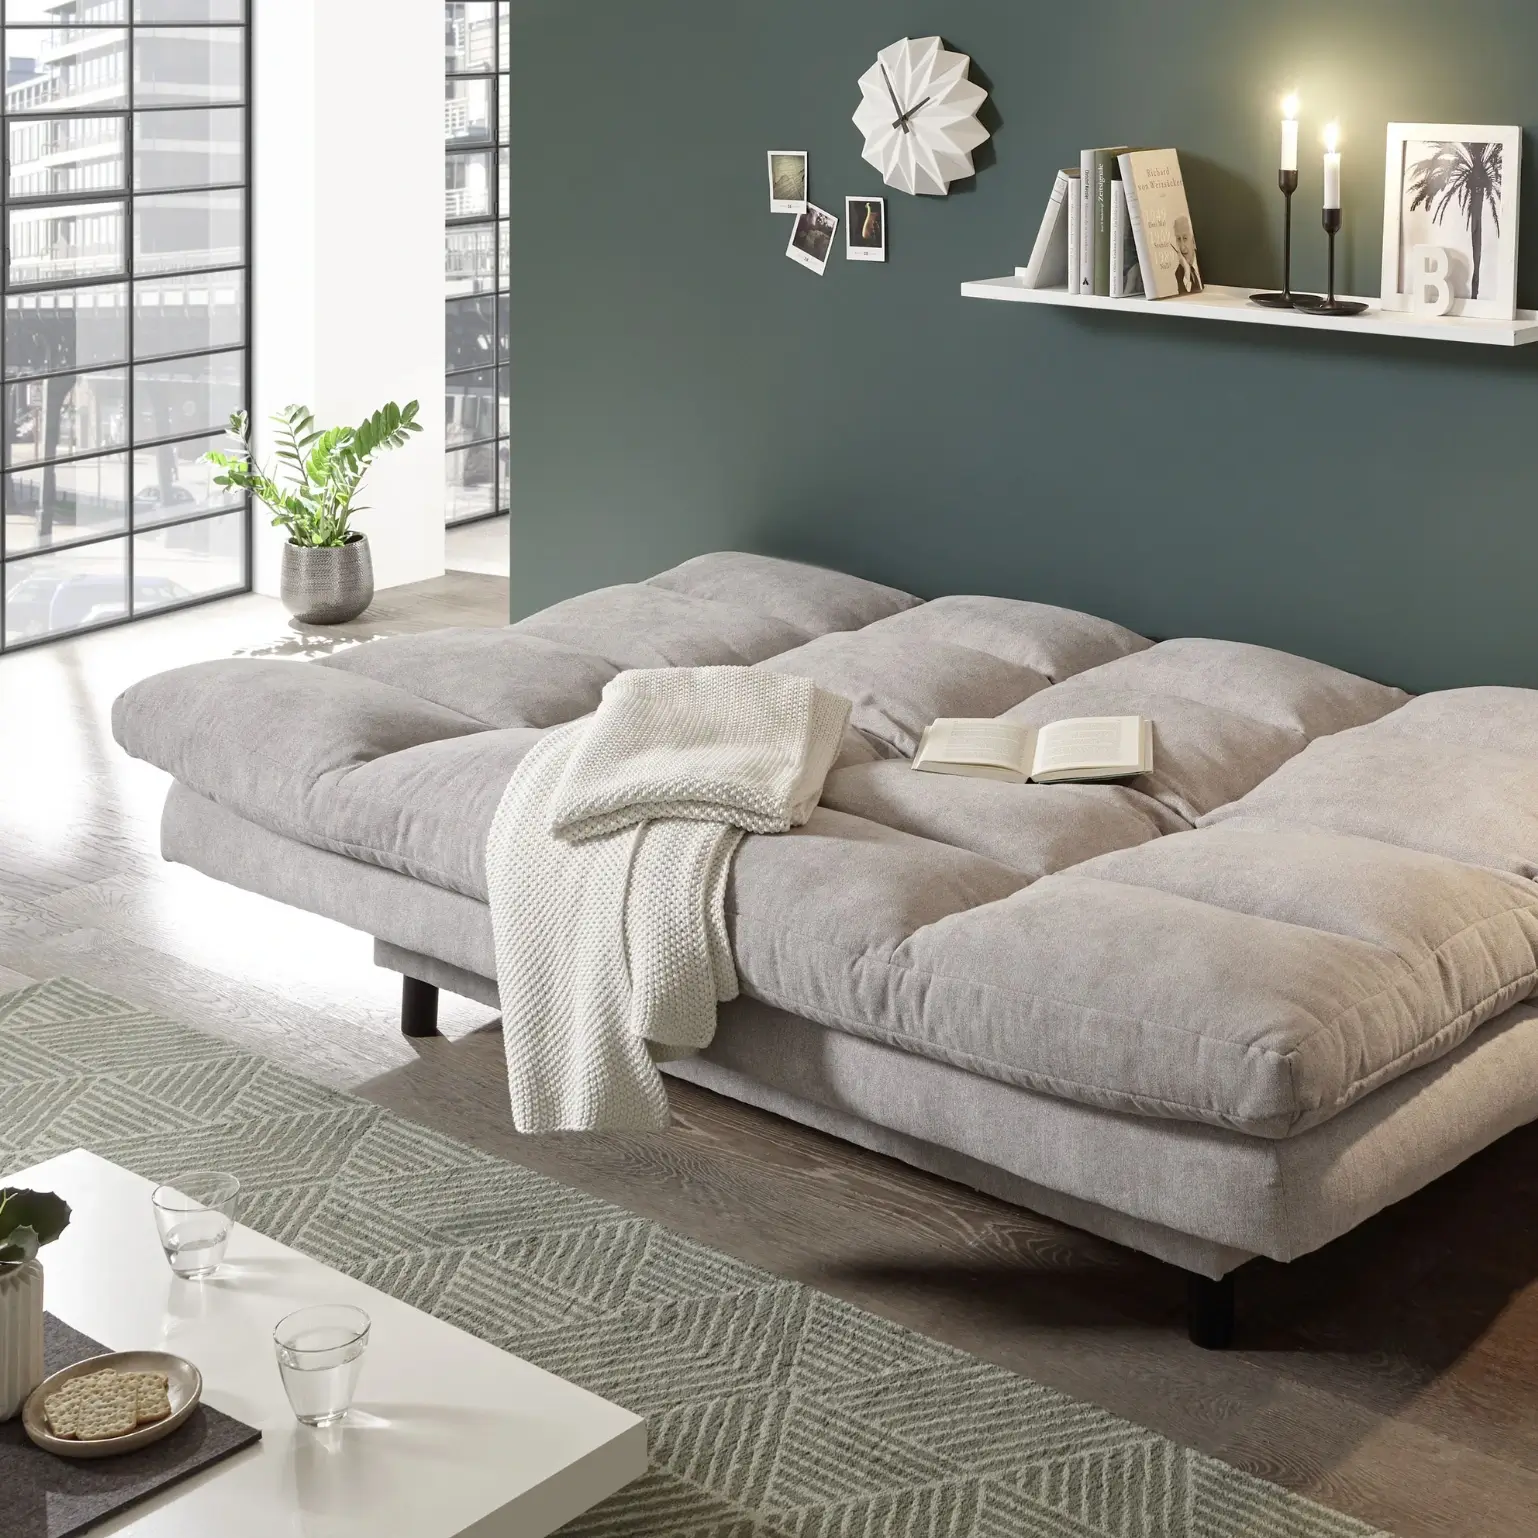 Canapé-lit LOTTA en gris clair avec des ressorts ondulés de haute qualité. L/H/P env. 190/85/95 cm